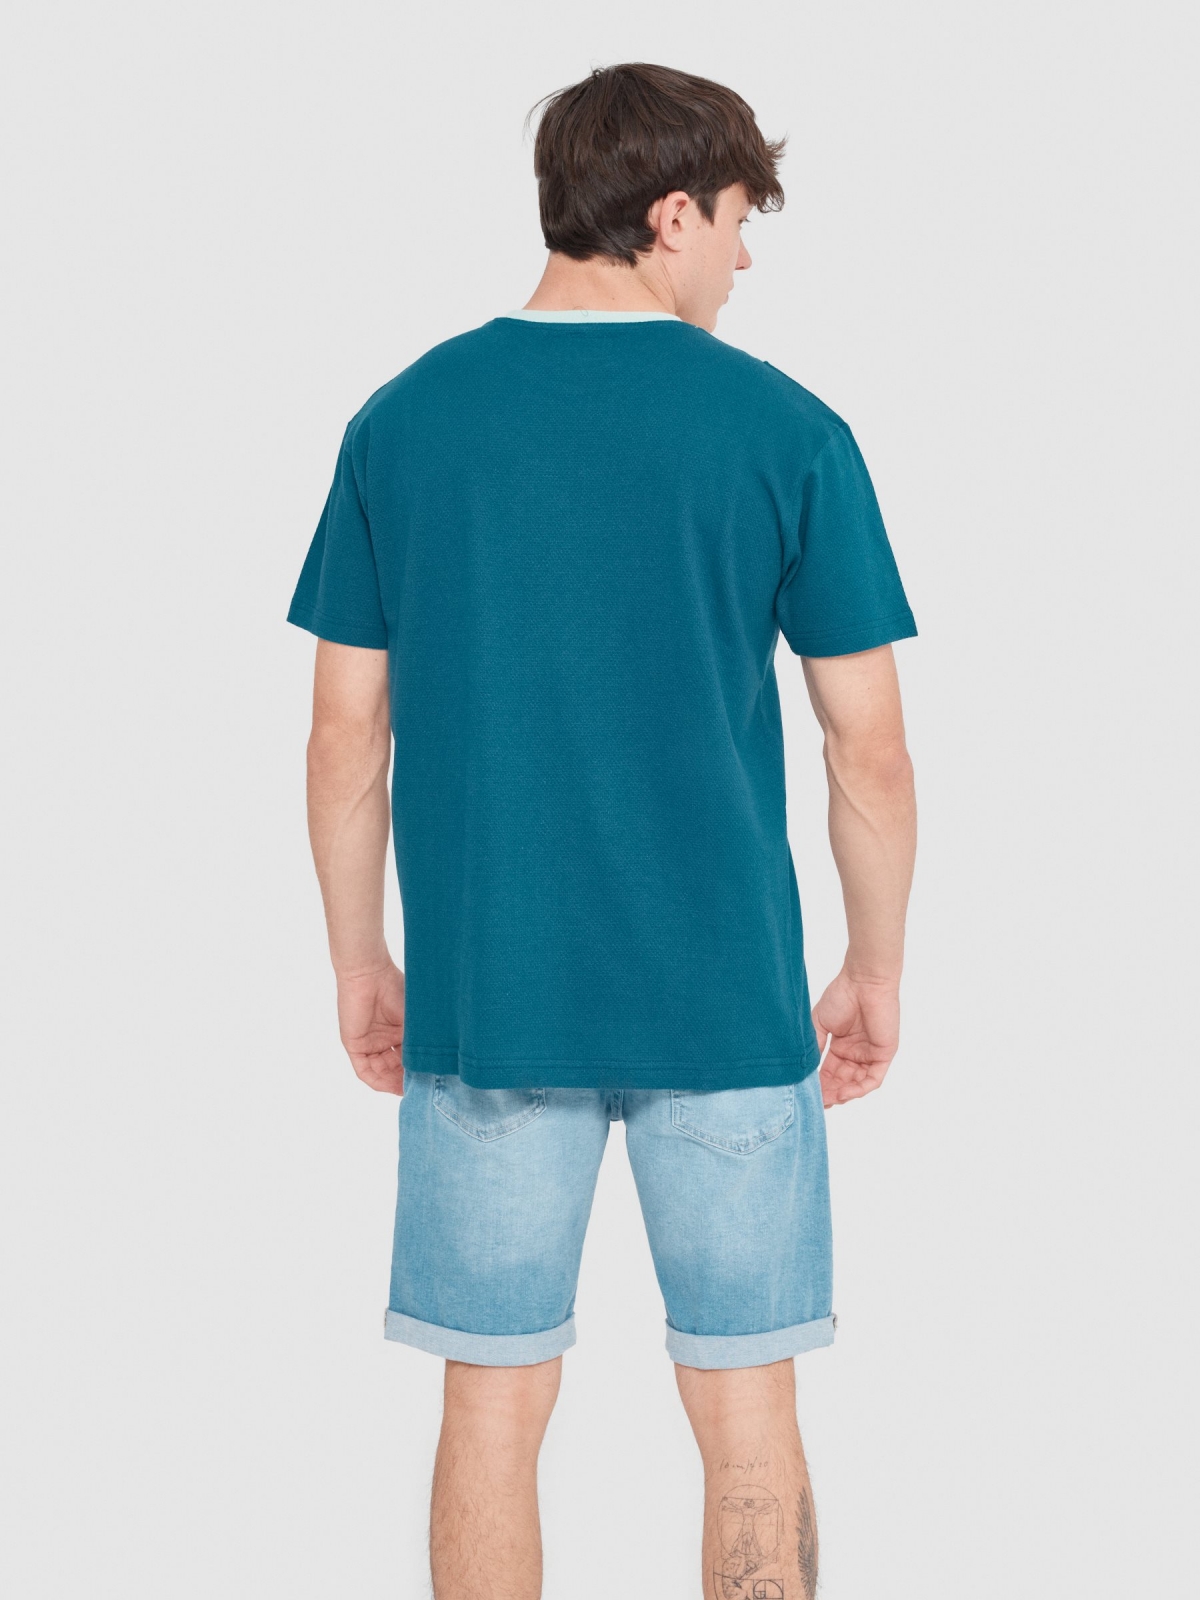 Vertical colour block t-shirt petrol blue middle back view